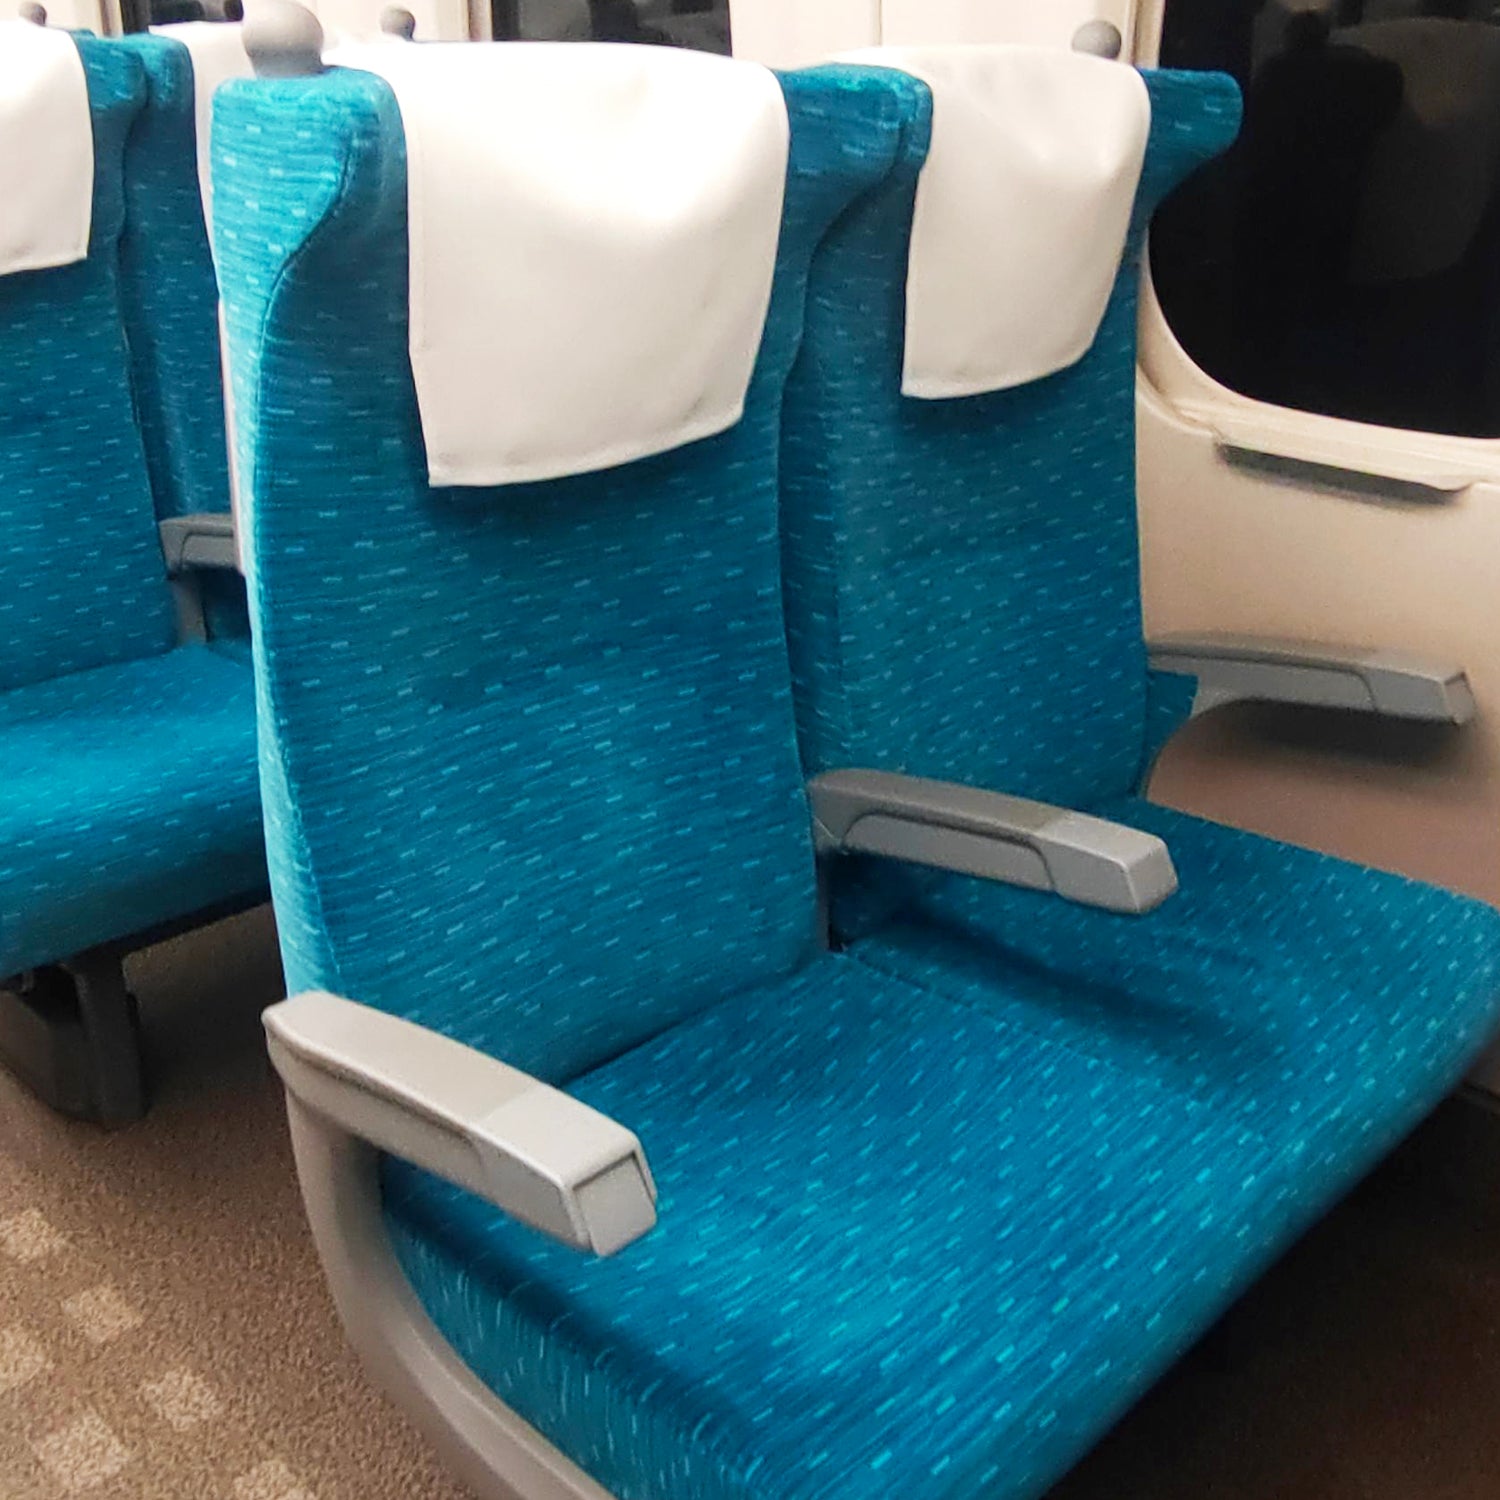 N700A東海道新幹線モケットざぶとんの本体素材には、N700A東海道新幹線の座席から取り出された生地を採用しています。